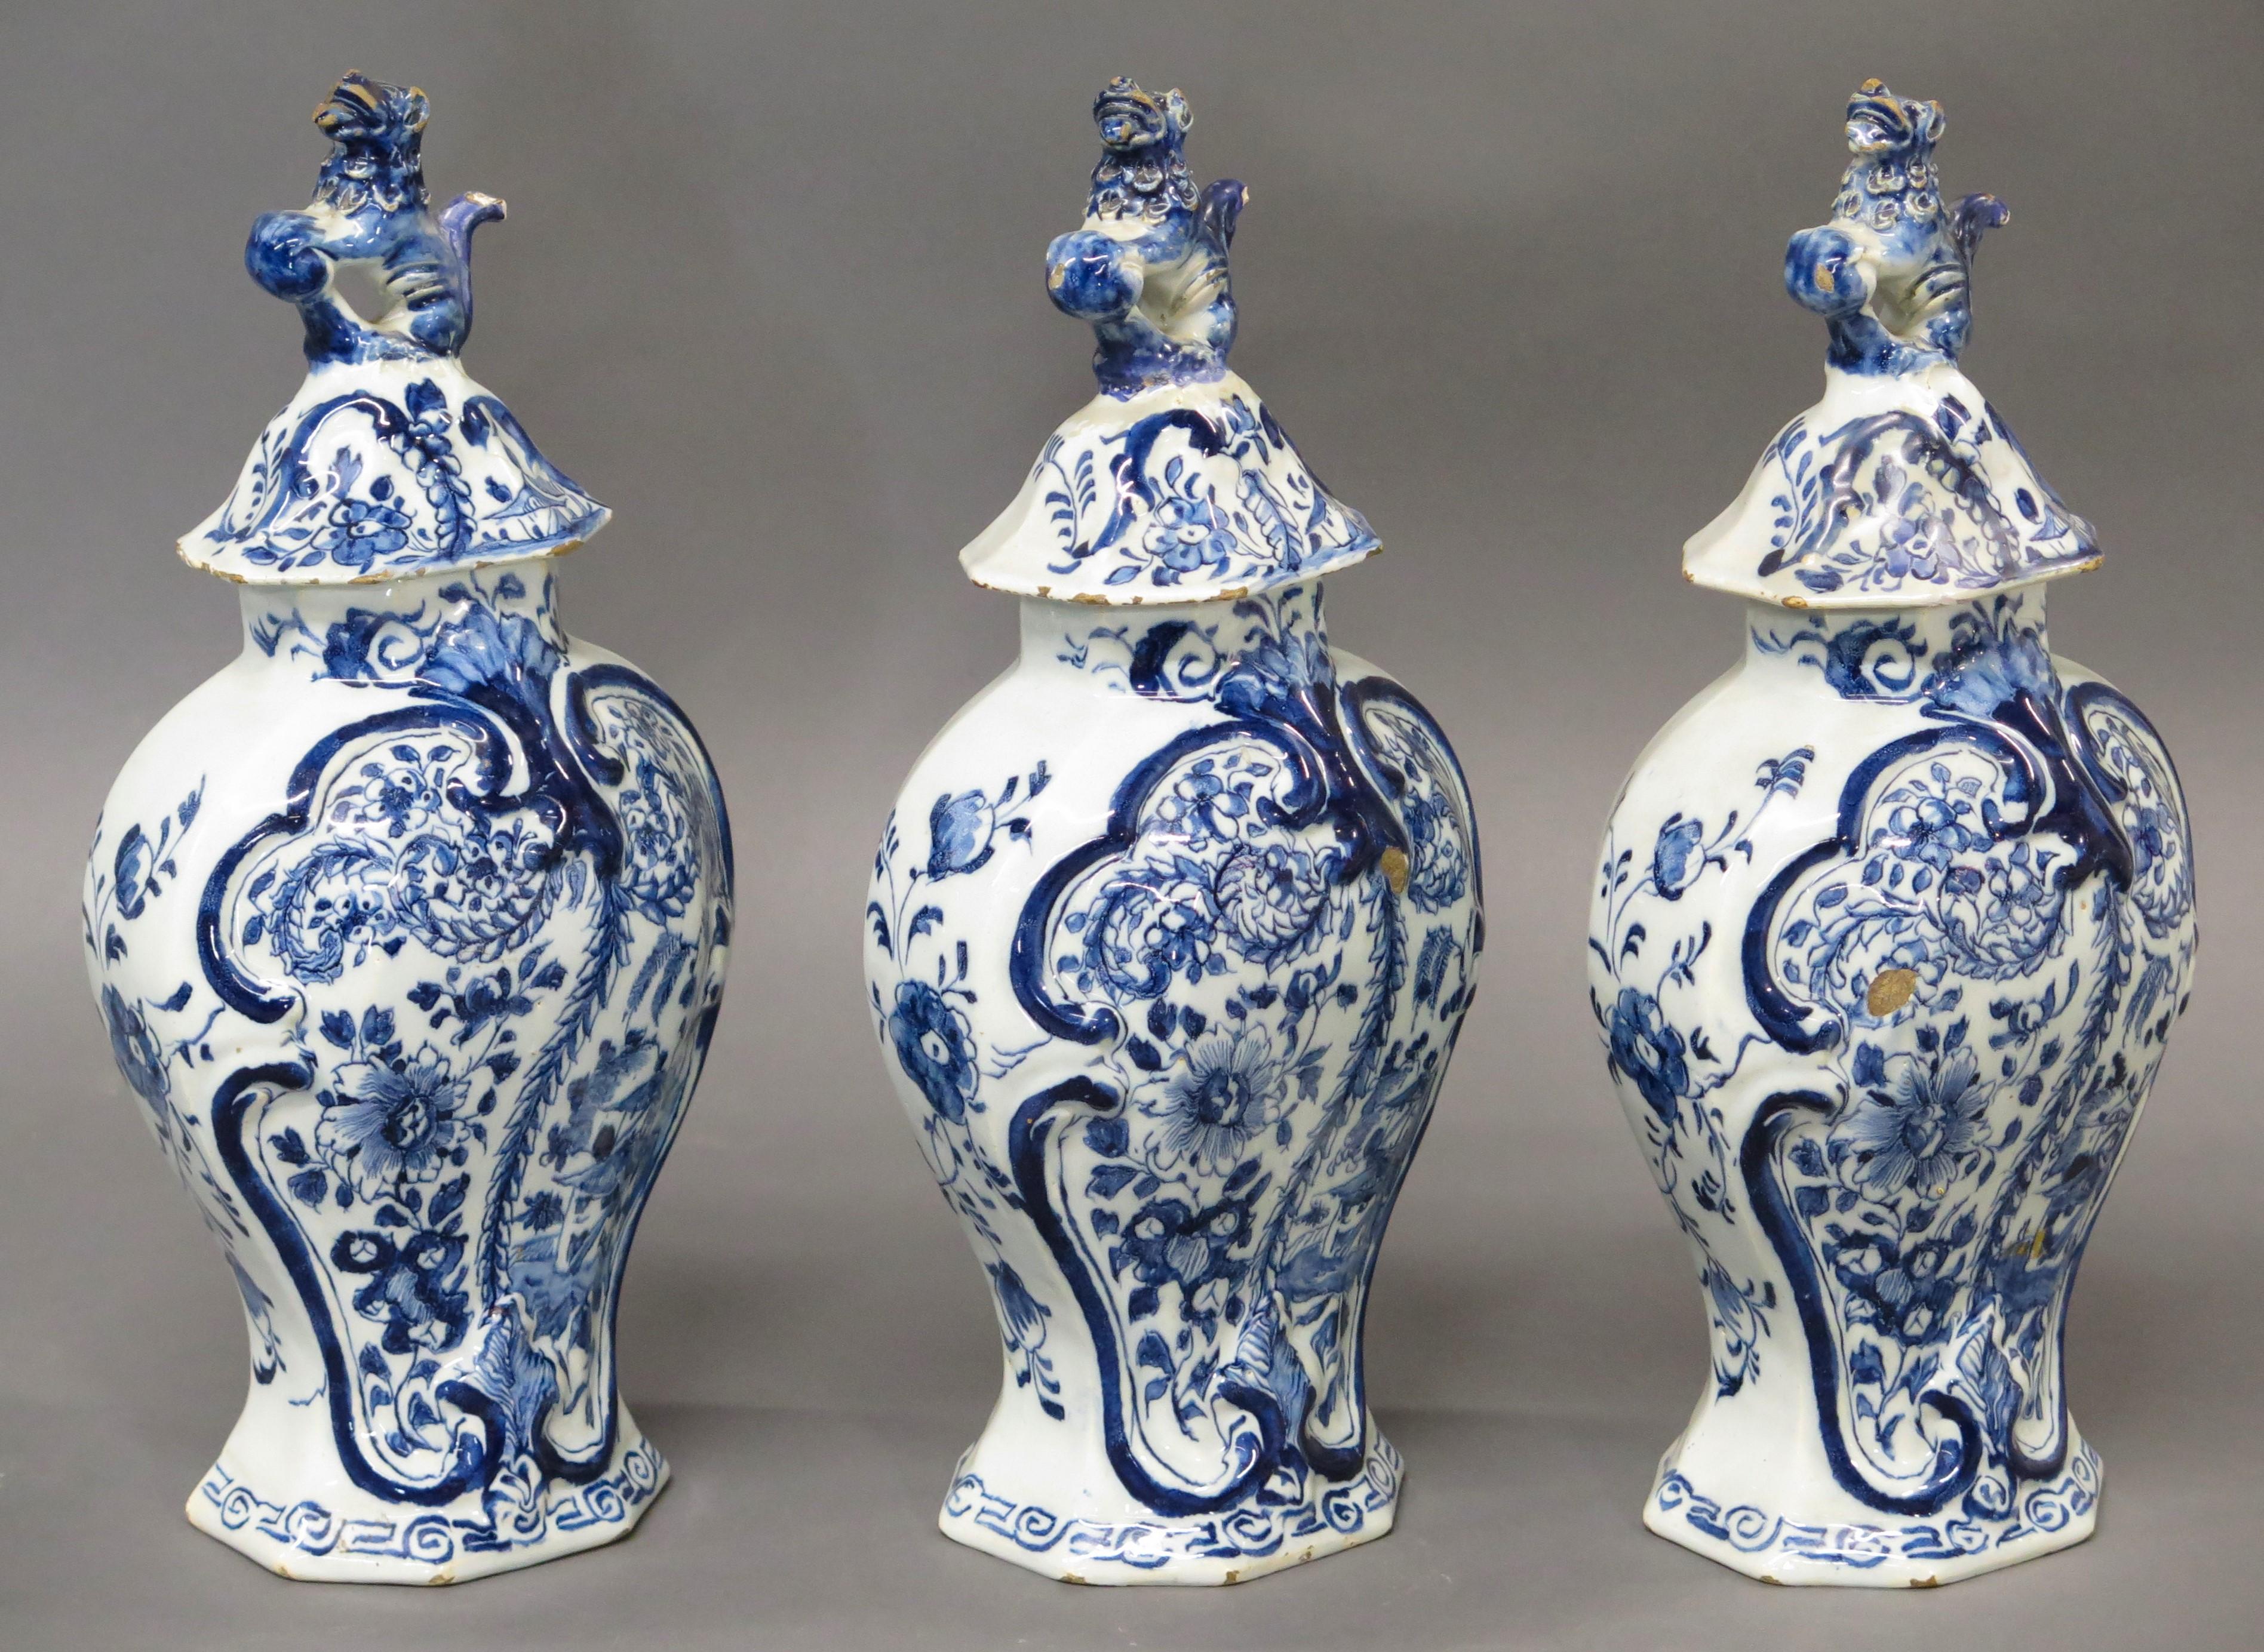 18. Jh. Niederländisches Delfter Vasenpaar mit Deckel, blau-weiß, mit Blumendekor und Blattrelief, mit Hundeknäufen, jede Vase auf dem Sockel gestempelt LPK für die Werkstatt 